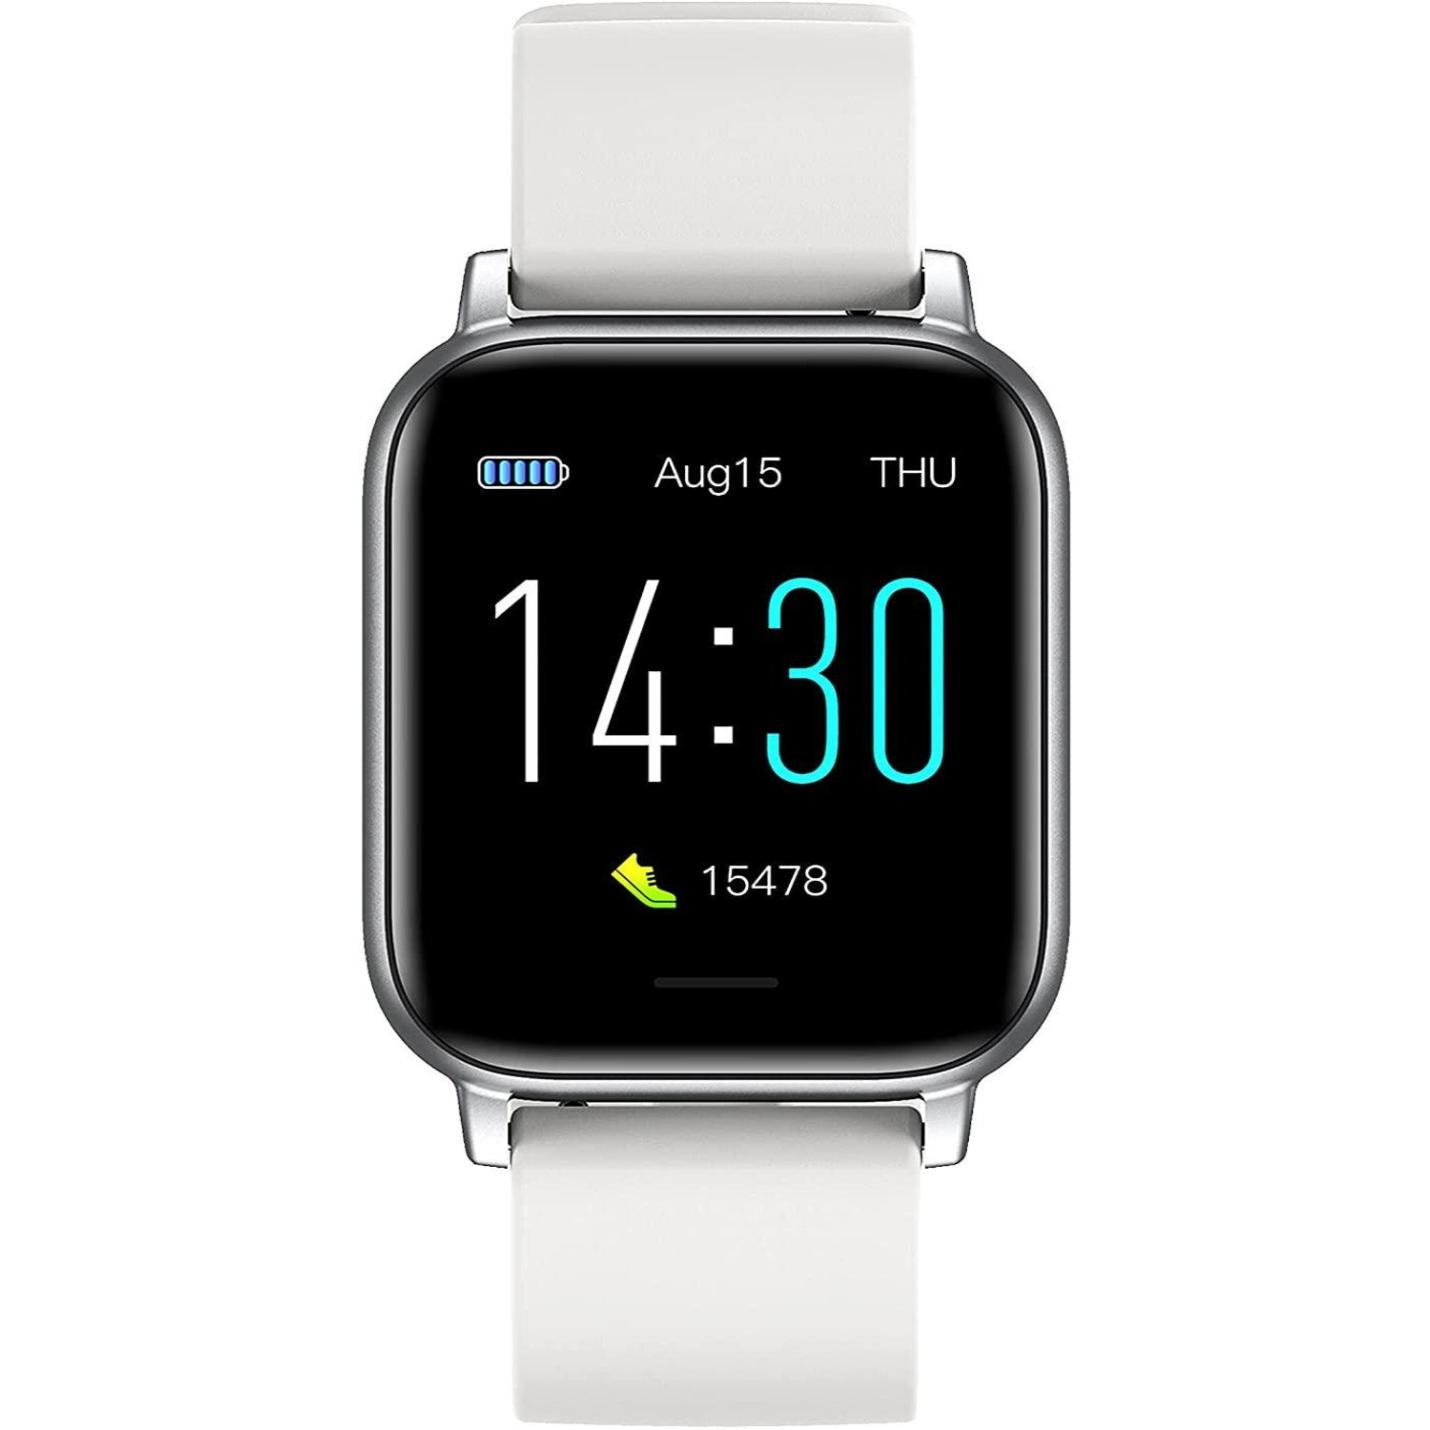 Smart Watch Fitness Polsband, Bluetooth Activity Tracker, waterdicht IP68, high-definition scherm, meertalige instellingen, magnetisch opladen, sporthorloge, voor iOS en Android - happygetfit.com